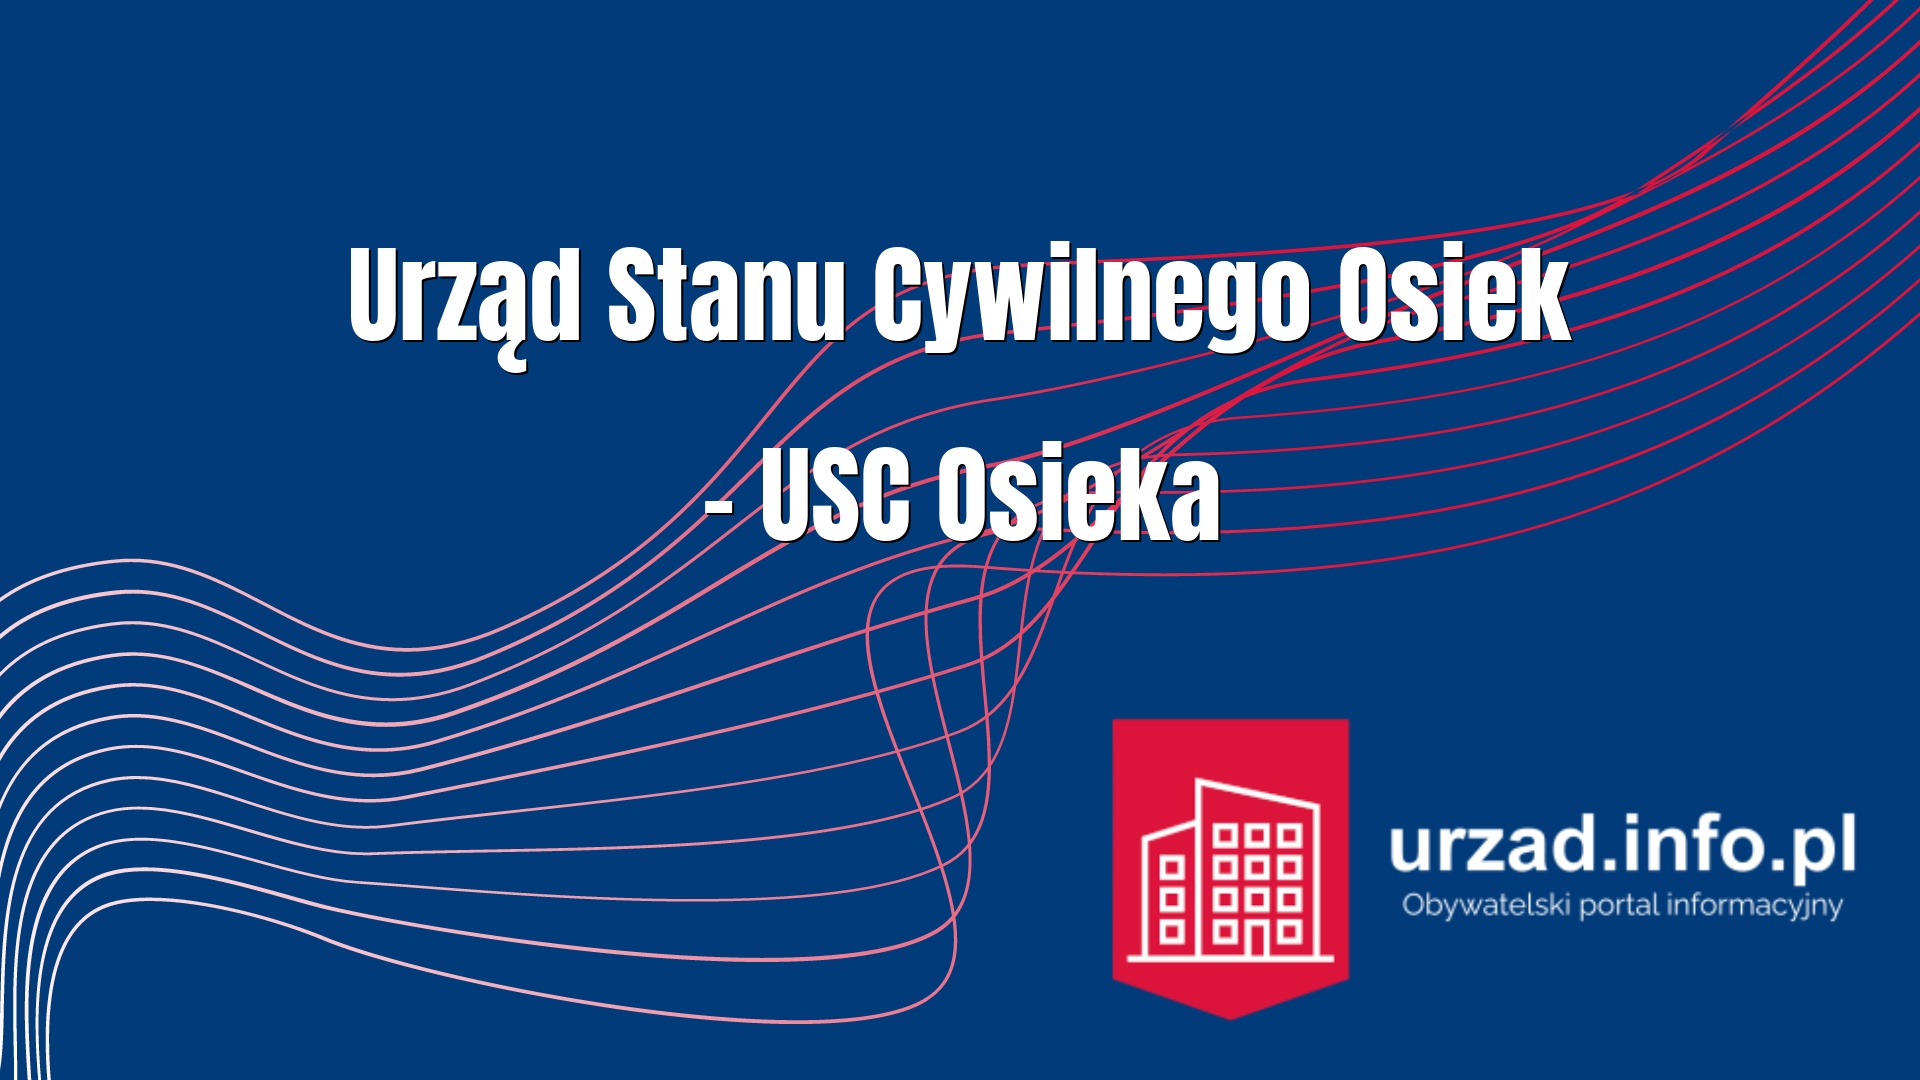 Urząd Stanu Cywilnego Osiek – USC Osieka